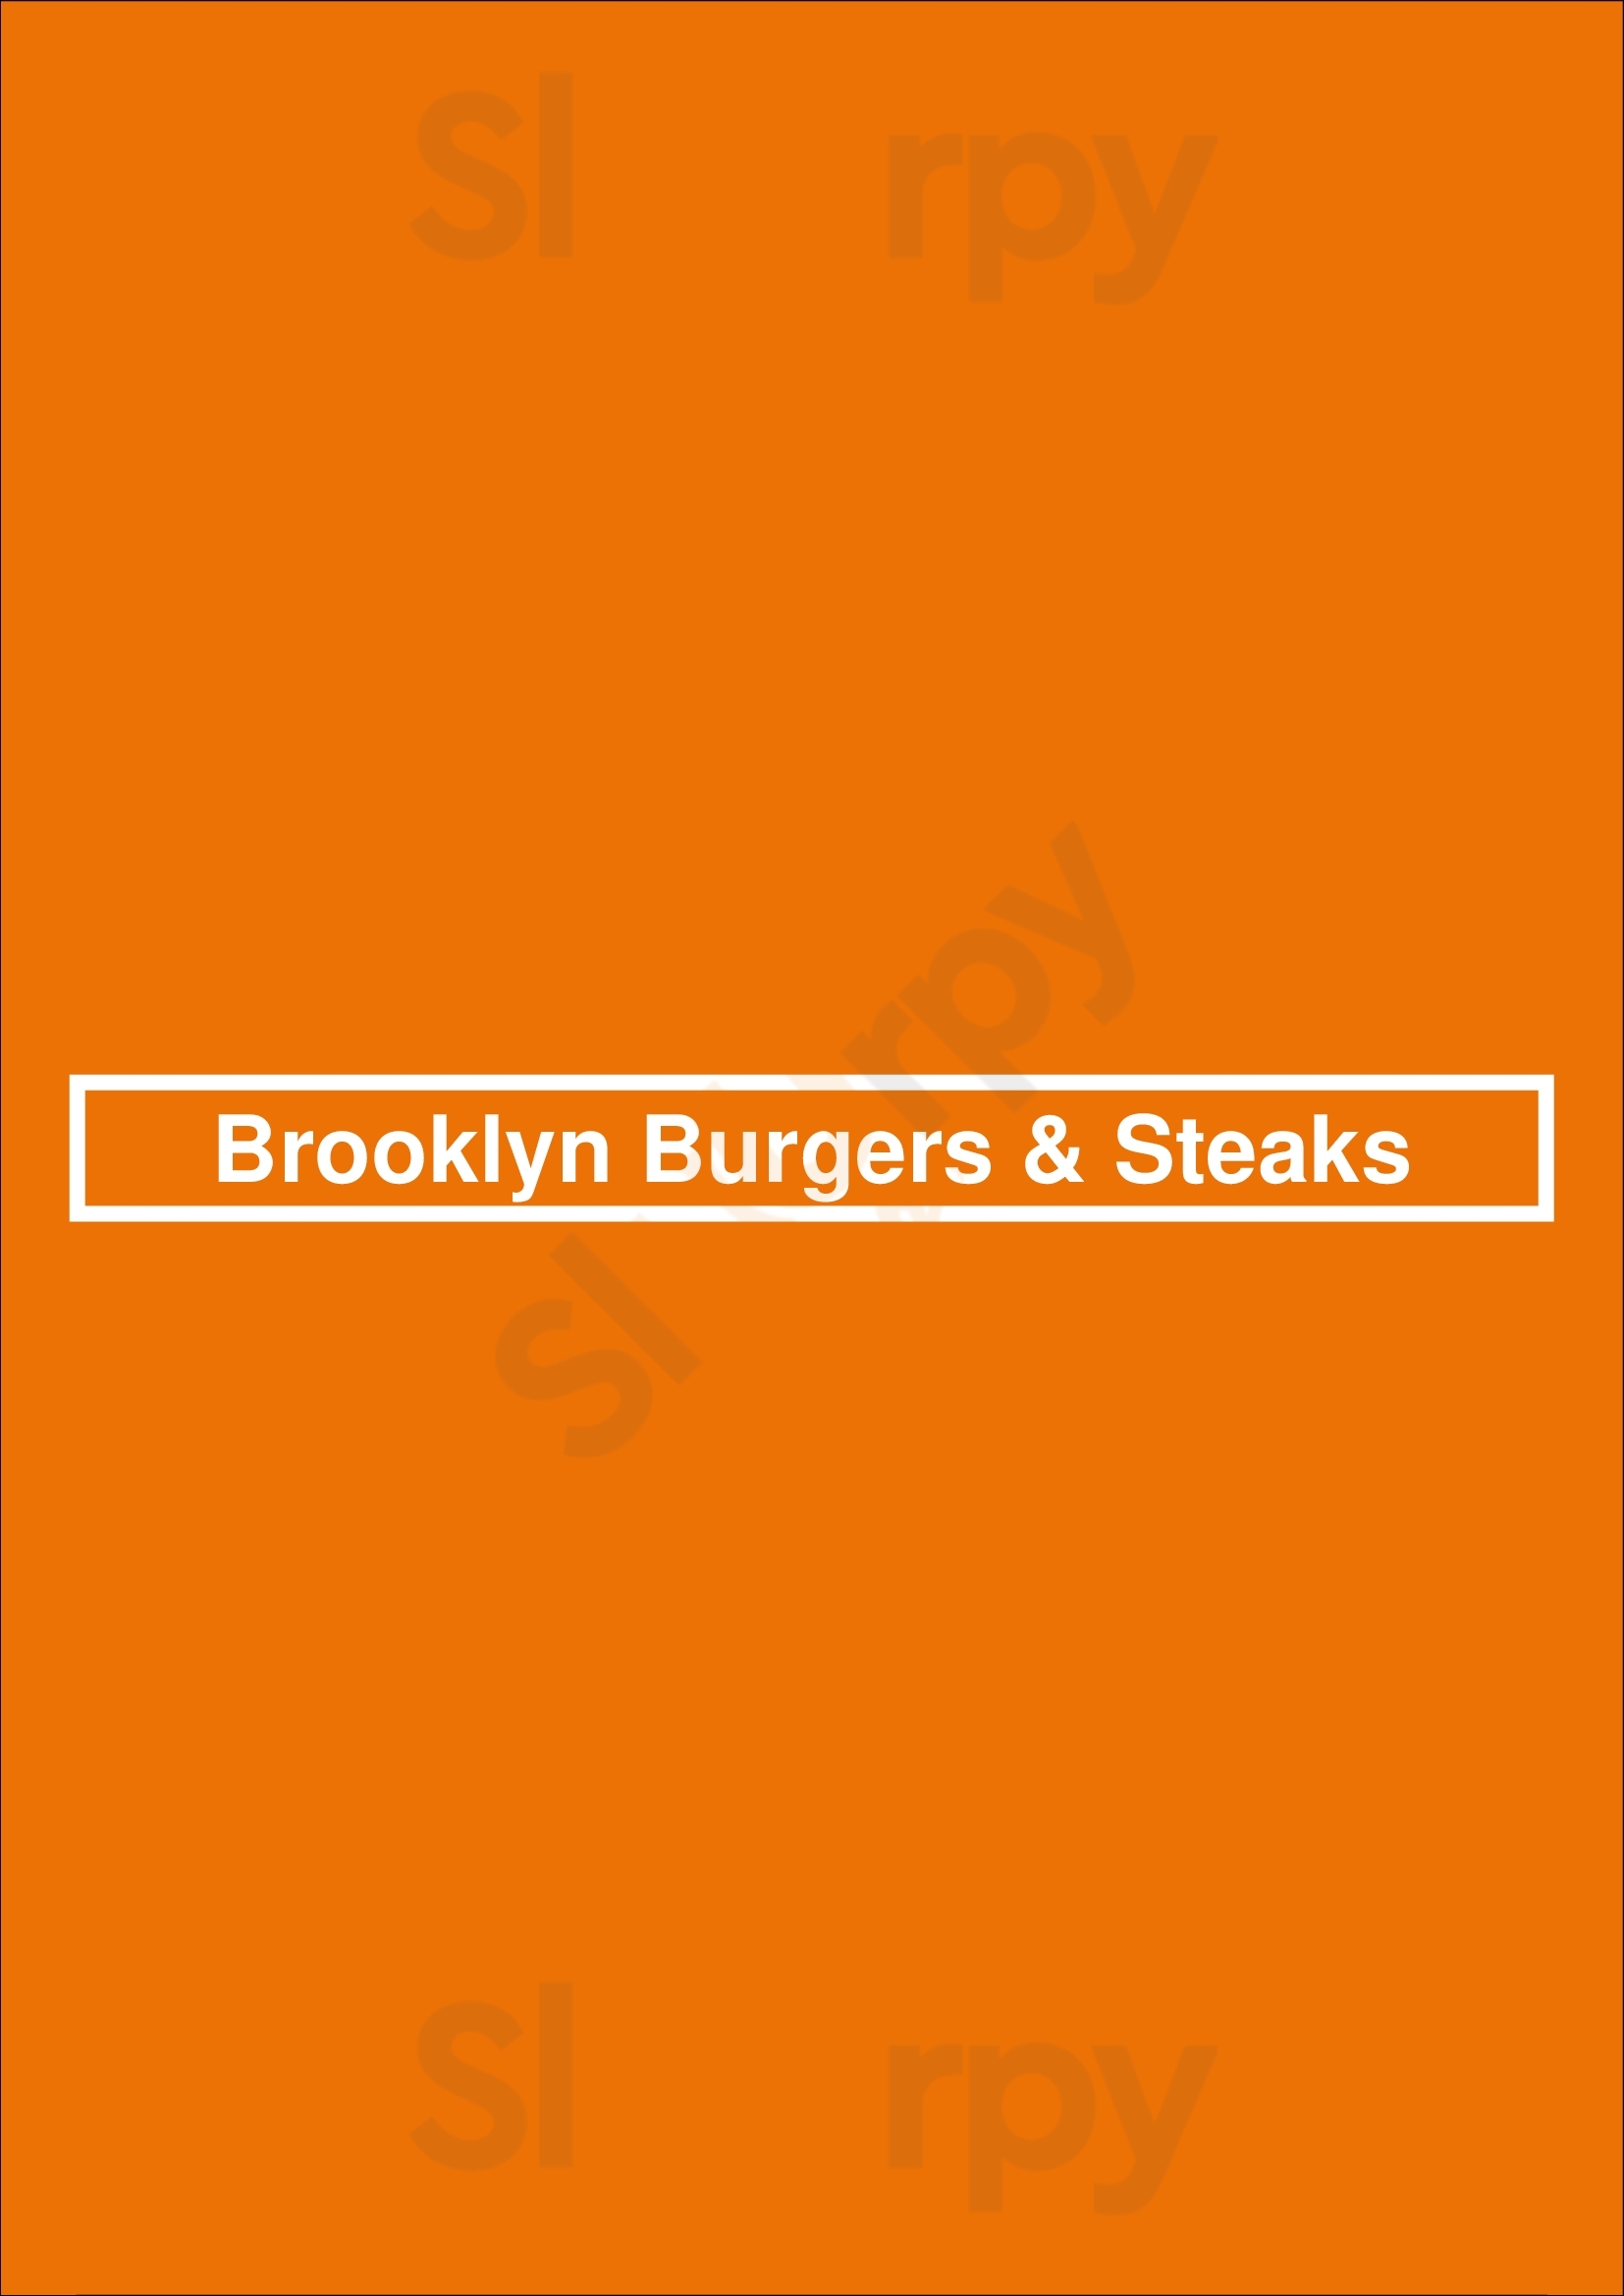 Brooklyn Burgers & Steaks Scheveningen Menu - 1